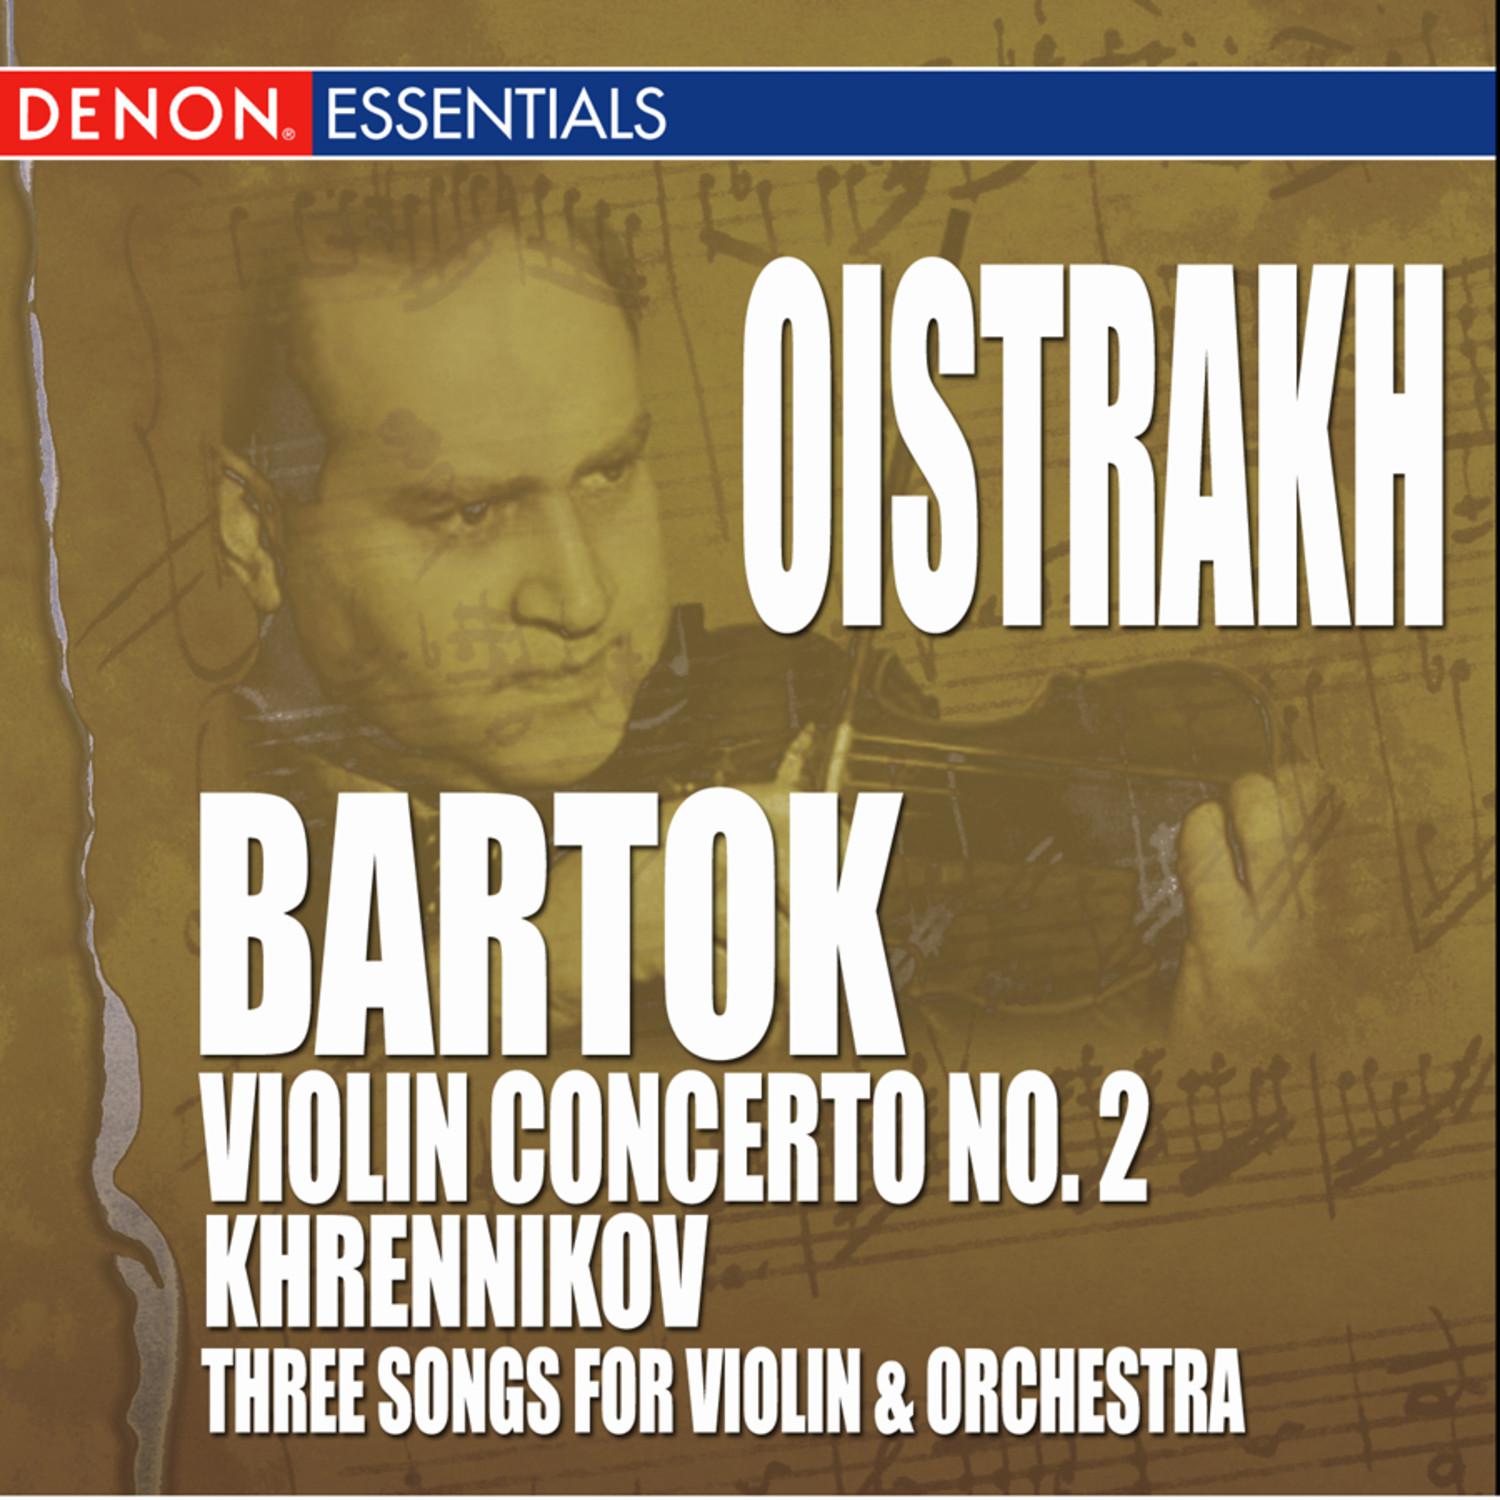 Concerto for Violin & Orchestra No. 2: III. Allegro molto